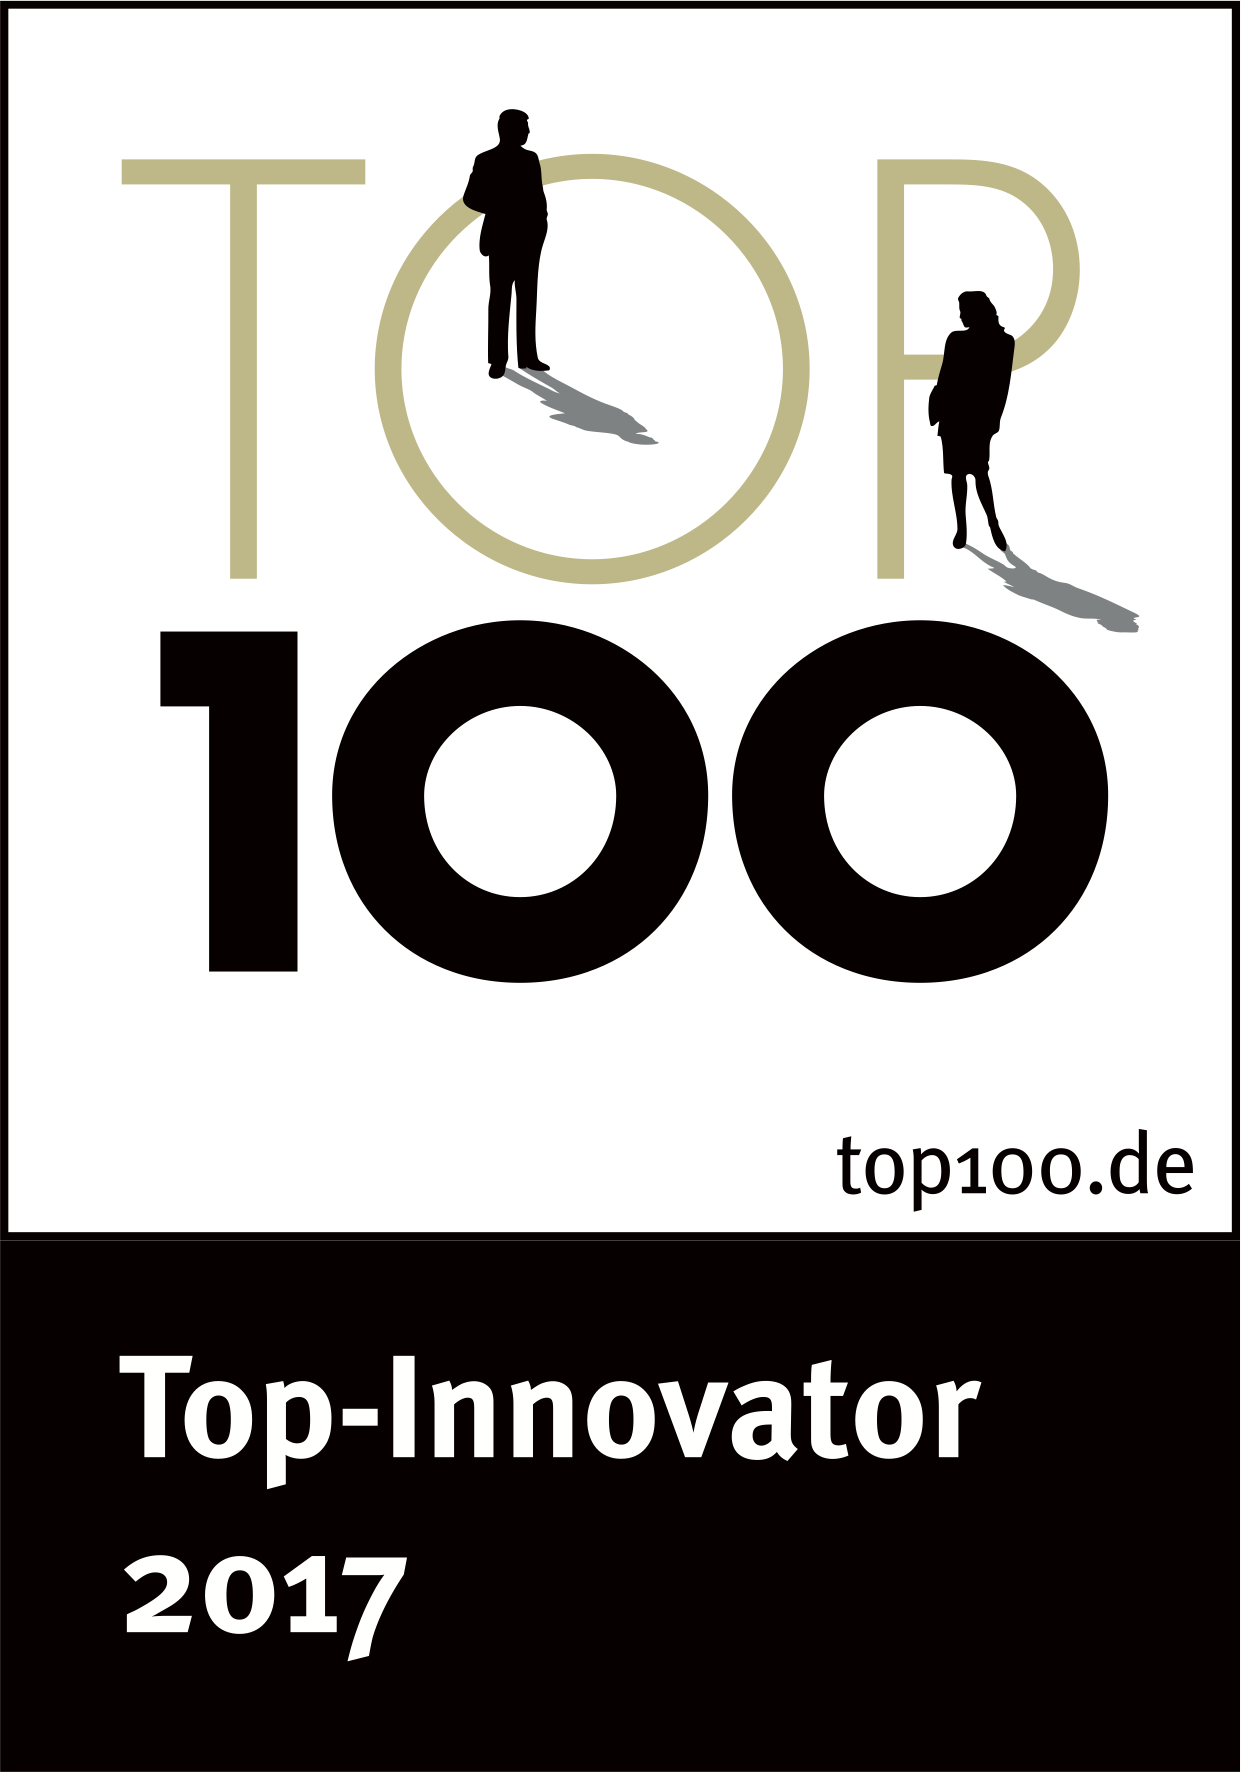 NEO vanntank mottok top innovator prisen i 2017